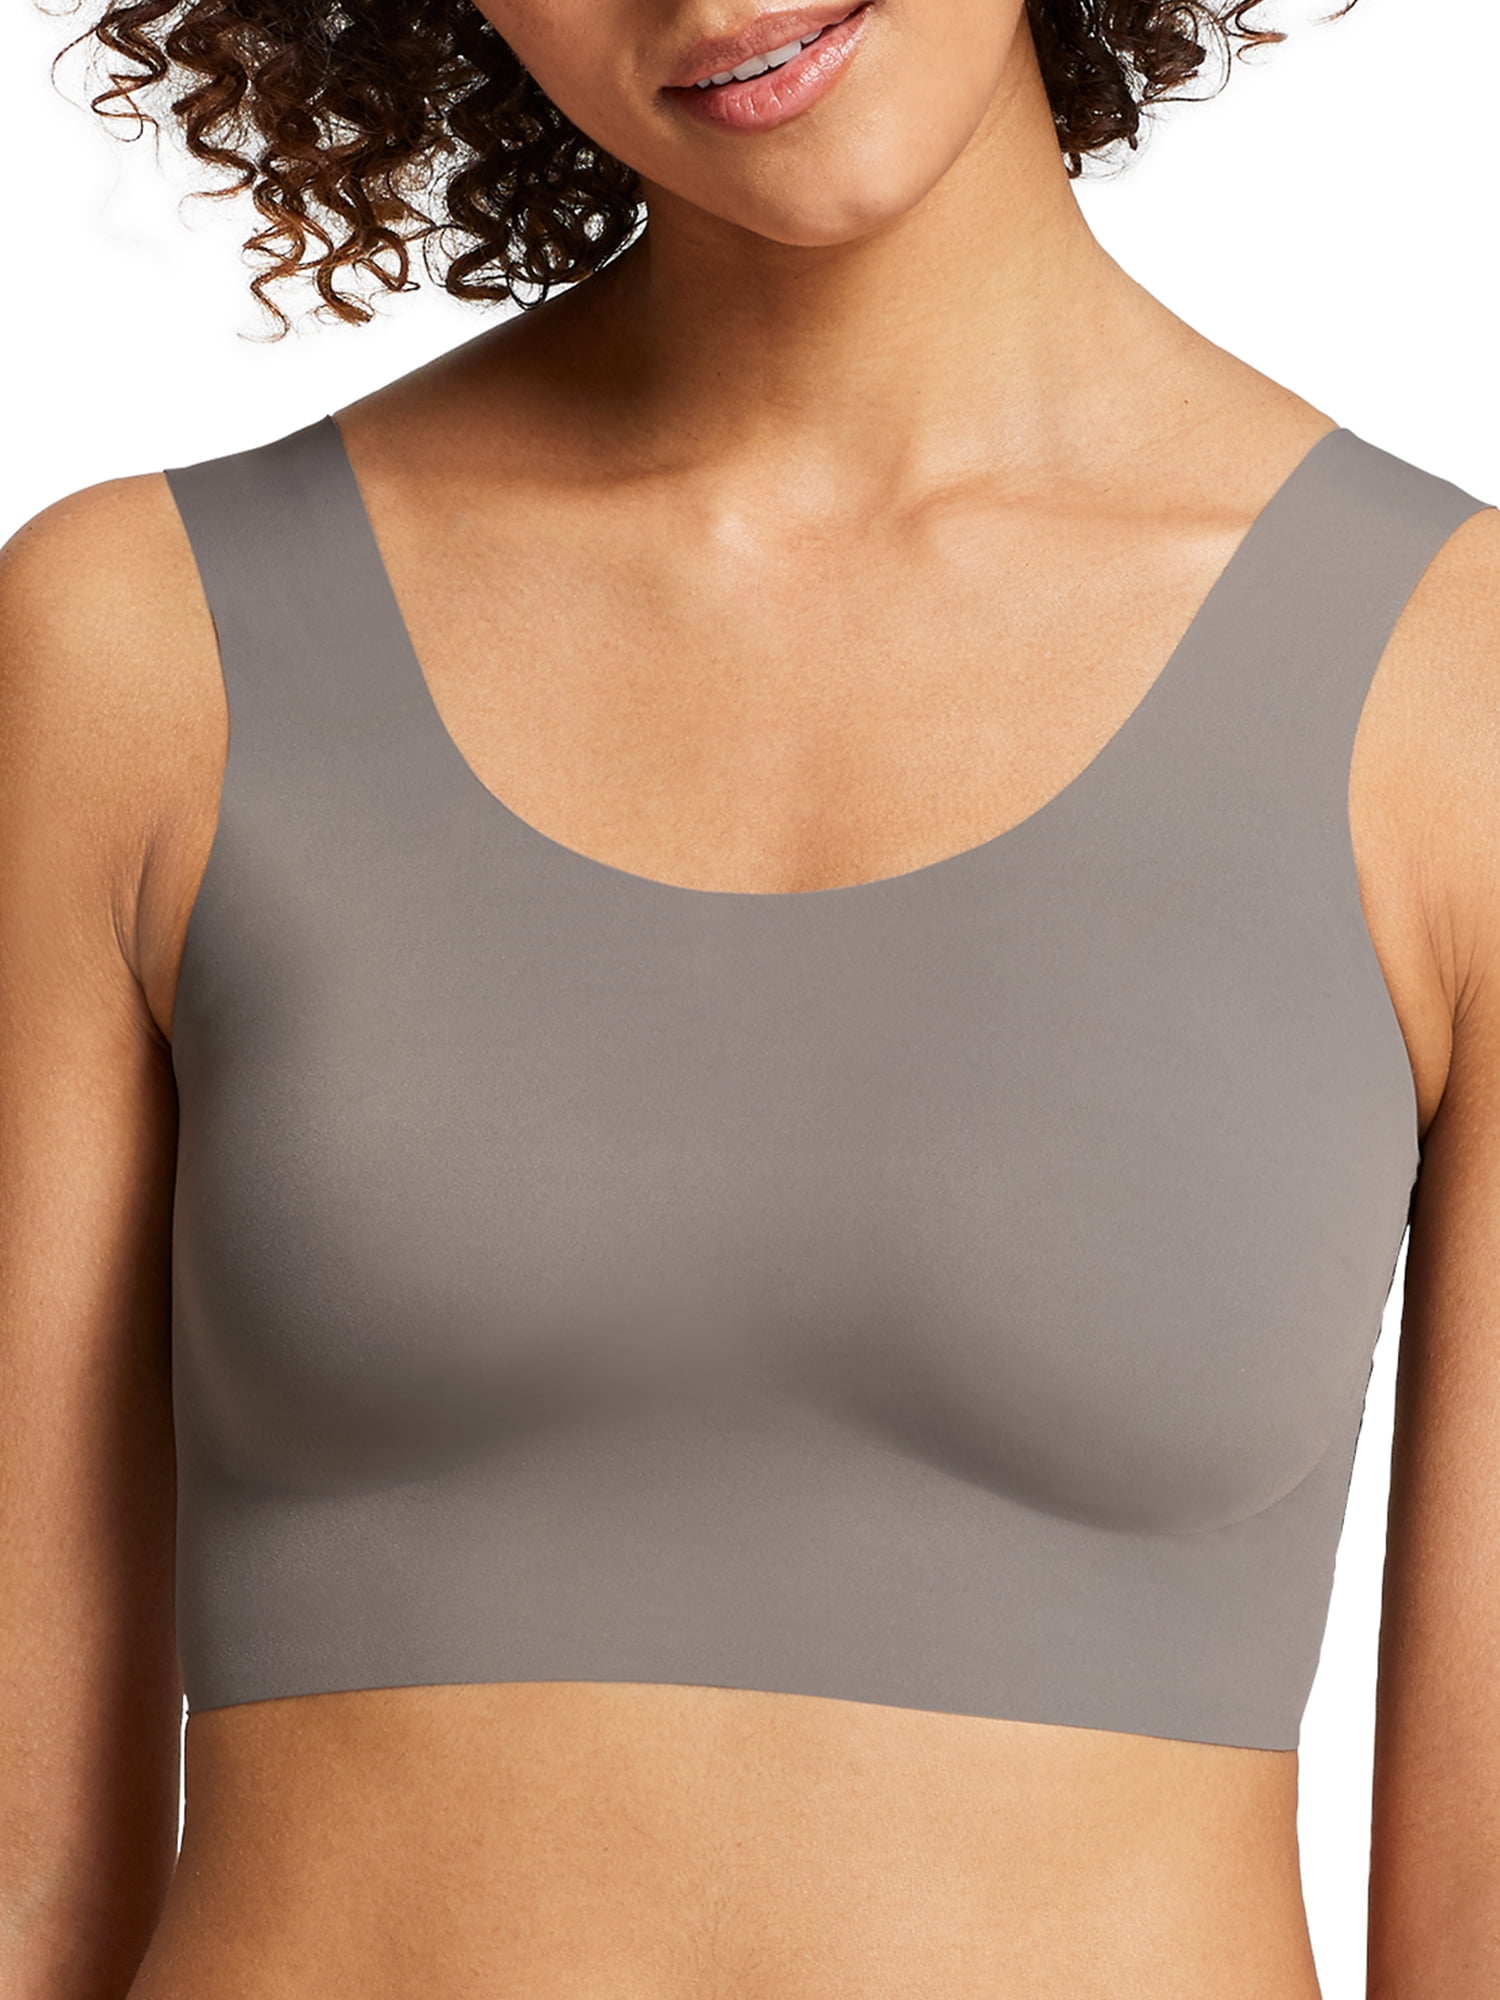 Lululemon Women's Scoop Neck Strappy Back Sports Bra Gray Size 6